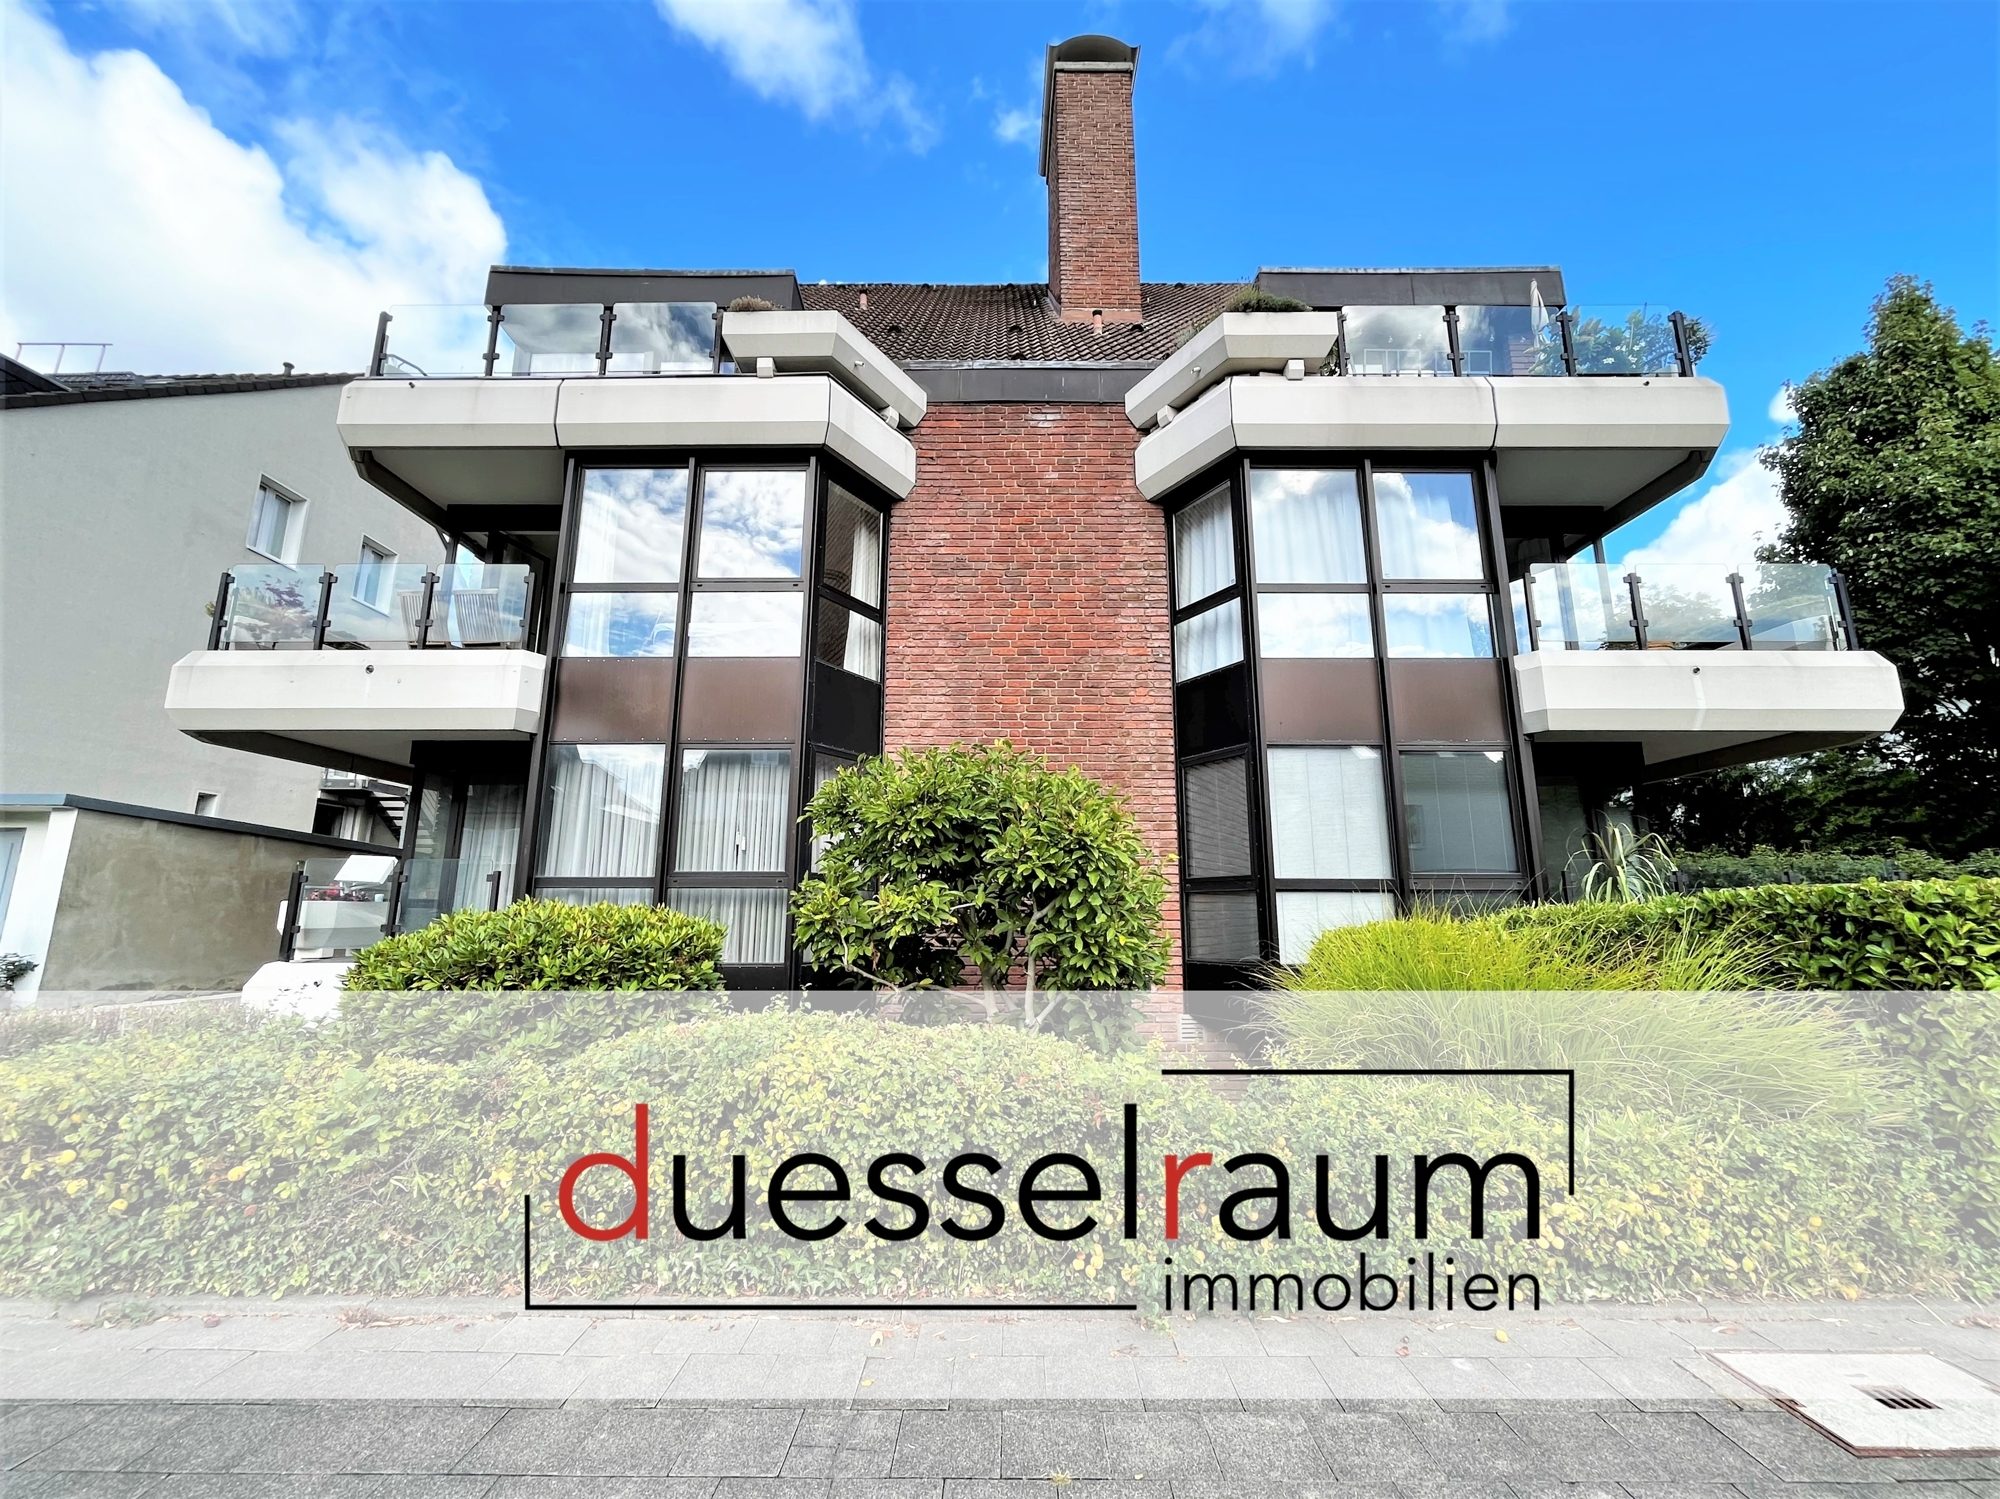 Immobilienangebot - Düsseldorf - Alle - Zooviertel: Lichtdurchflutete und geräumige 3-Zimmer-Wohnung mit EBK und Rundum-Balkon in Bestlage!